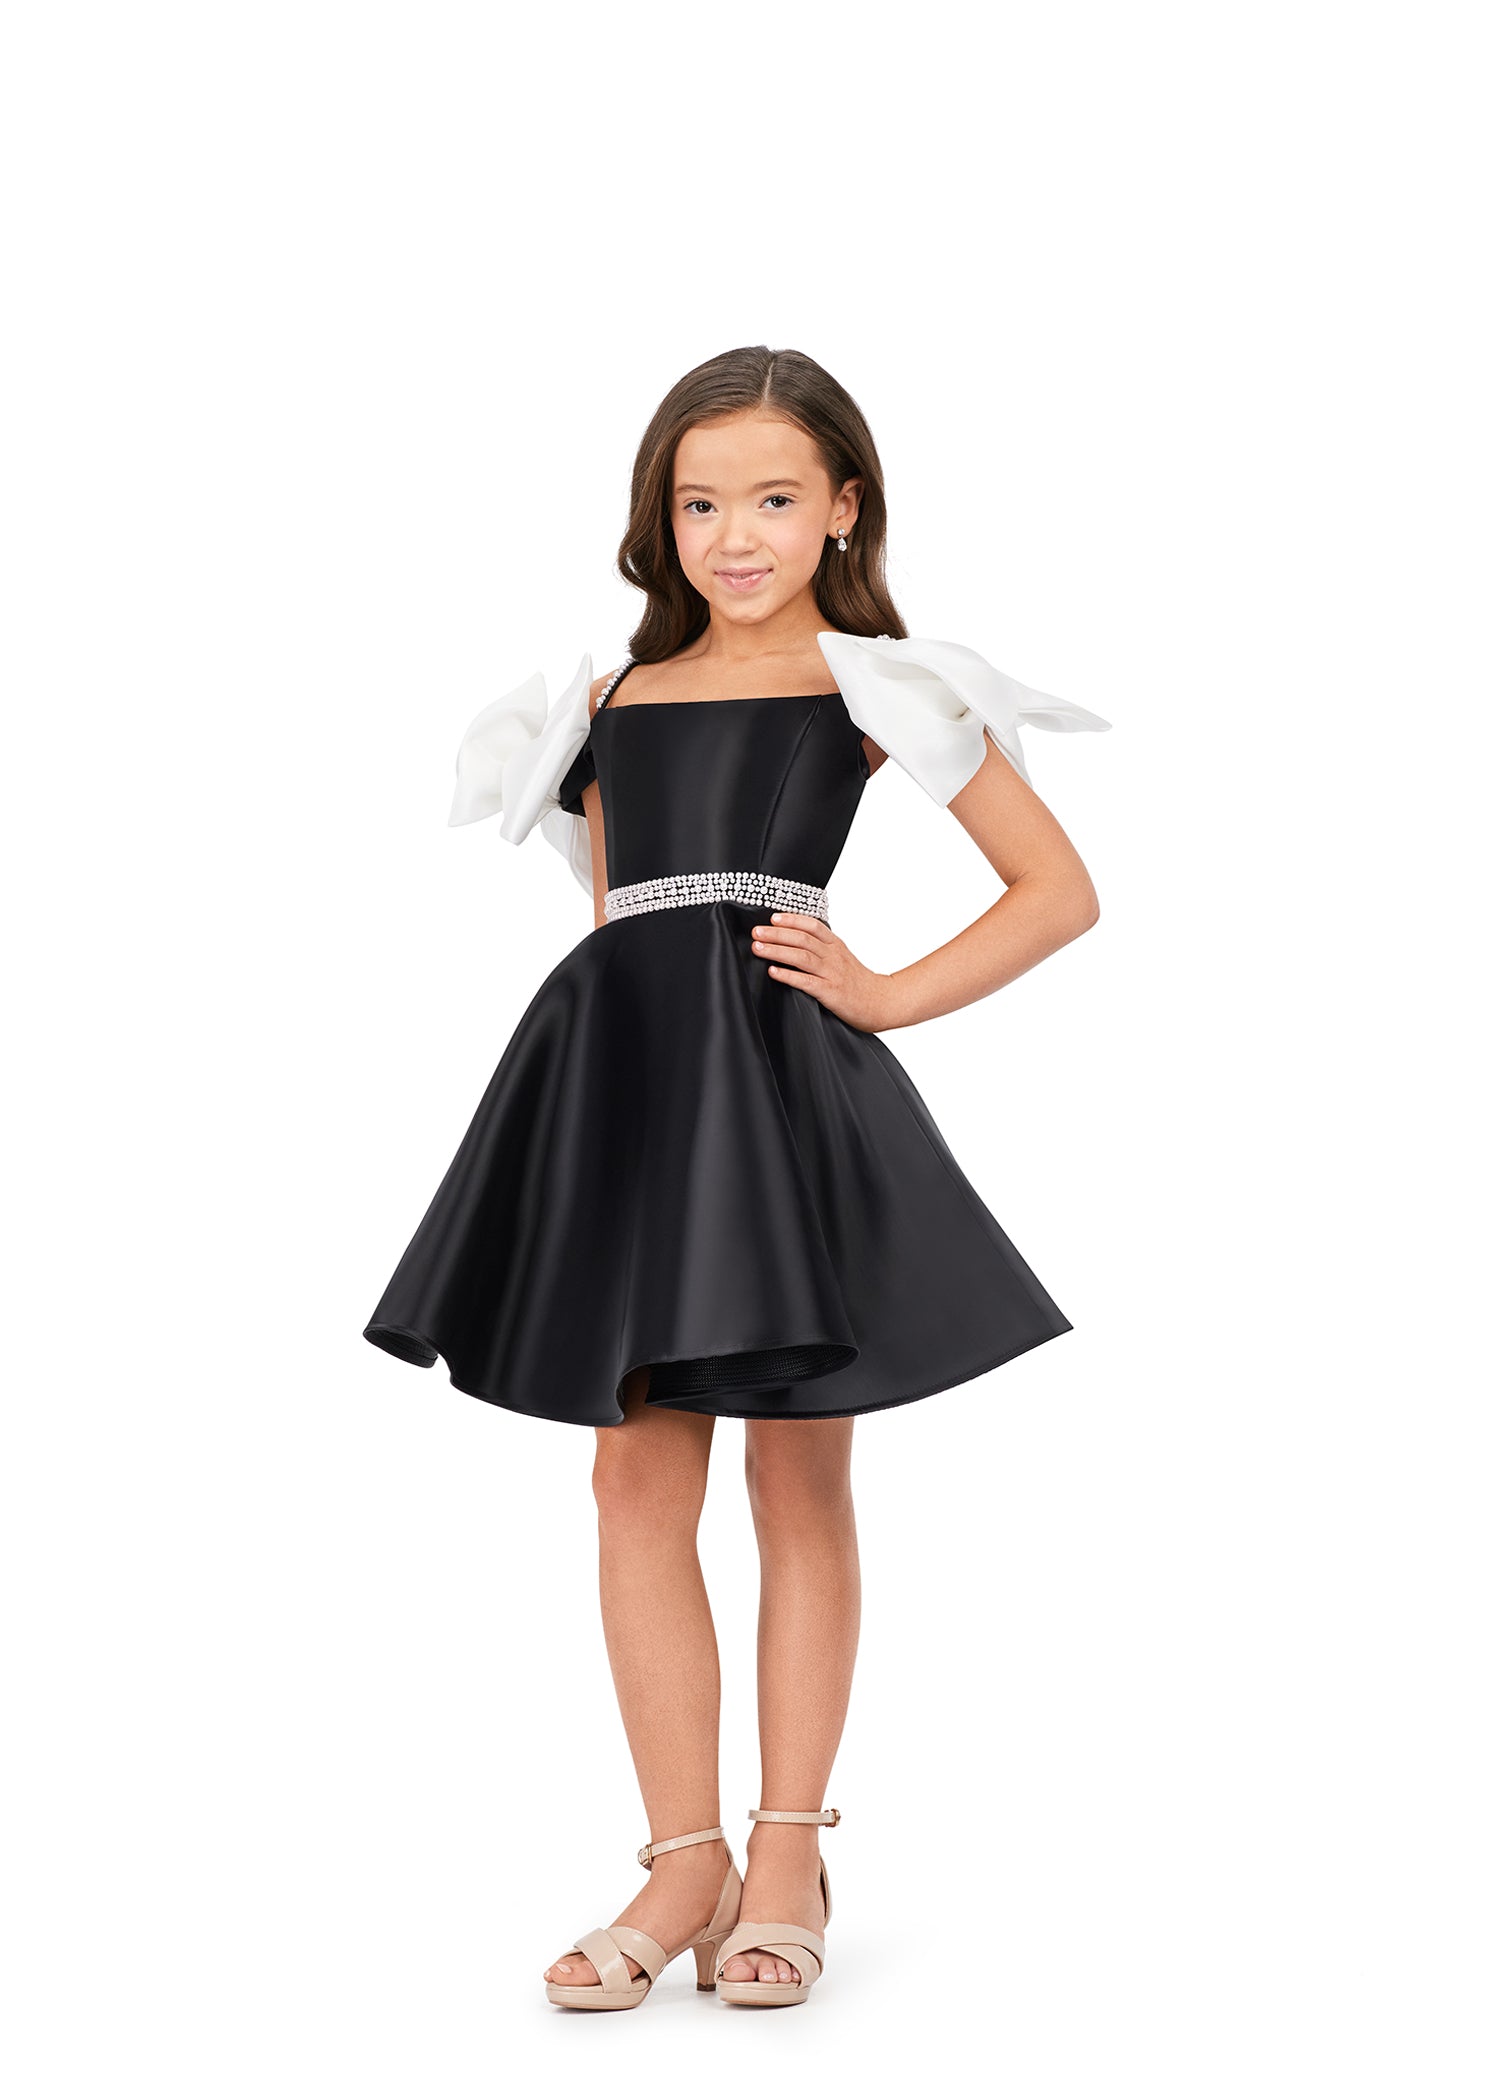 Tweenstyle Black Adjustable Ruched Side Dress – a Spirit Animal